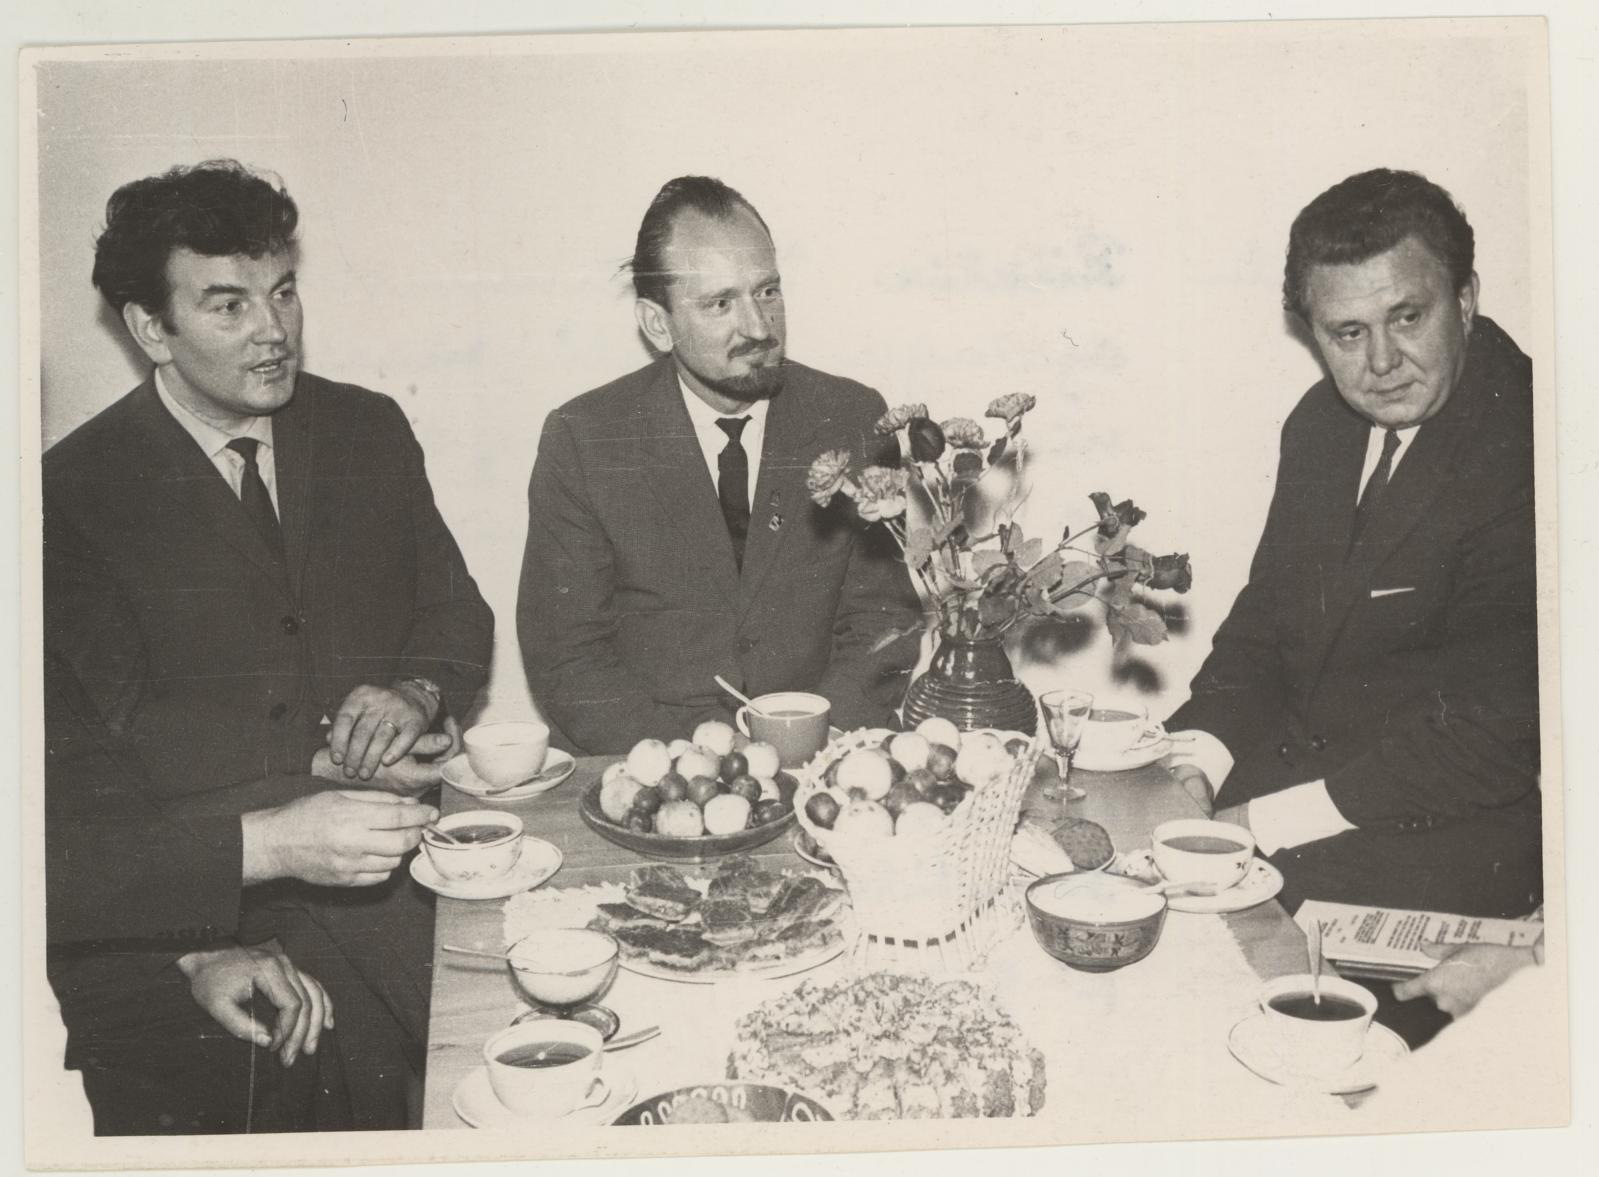 Läti maalikunstnik Uldis Zamzarise teoste näituse avamise (25. sept. 1965) koosviibimiselt.